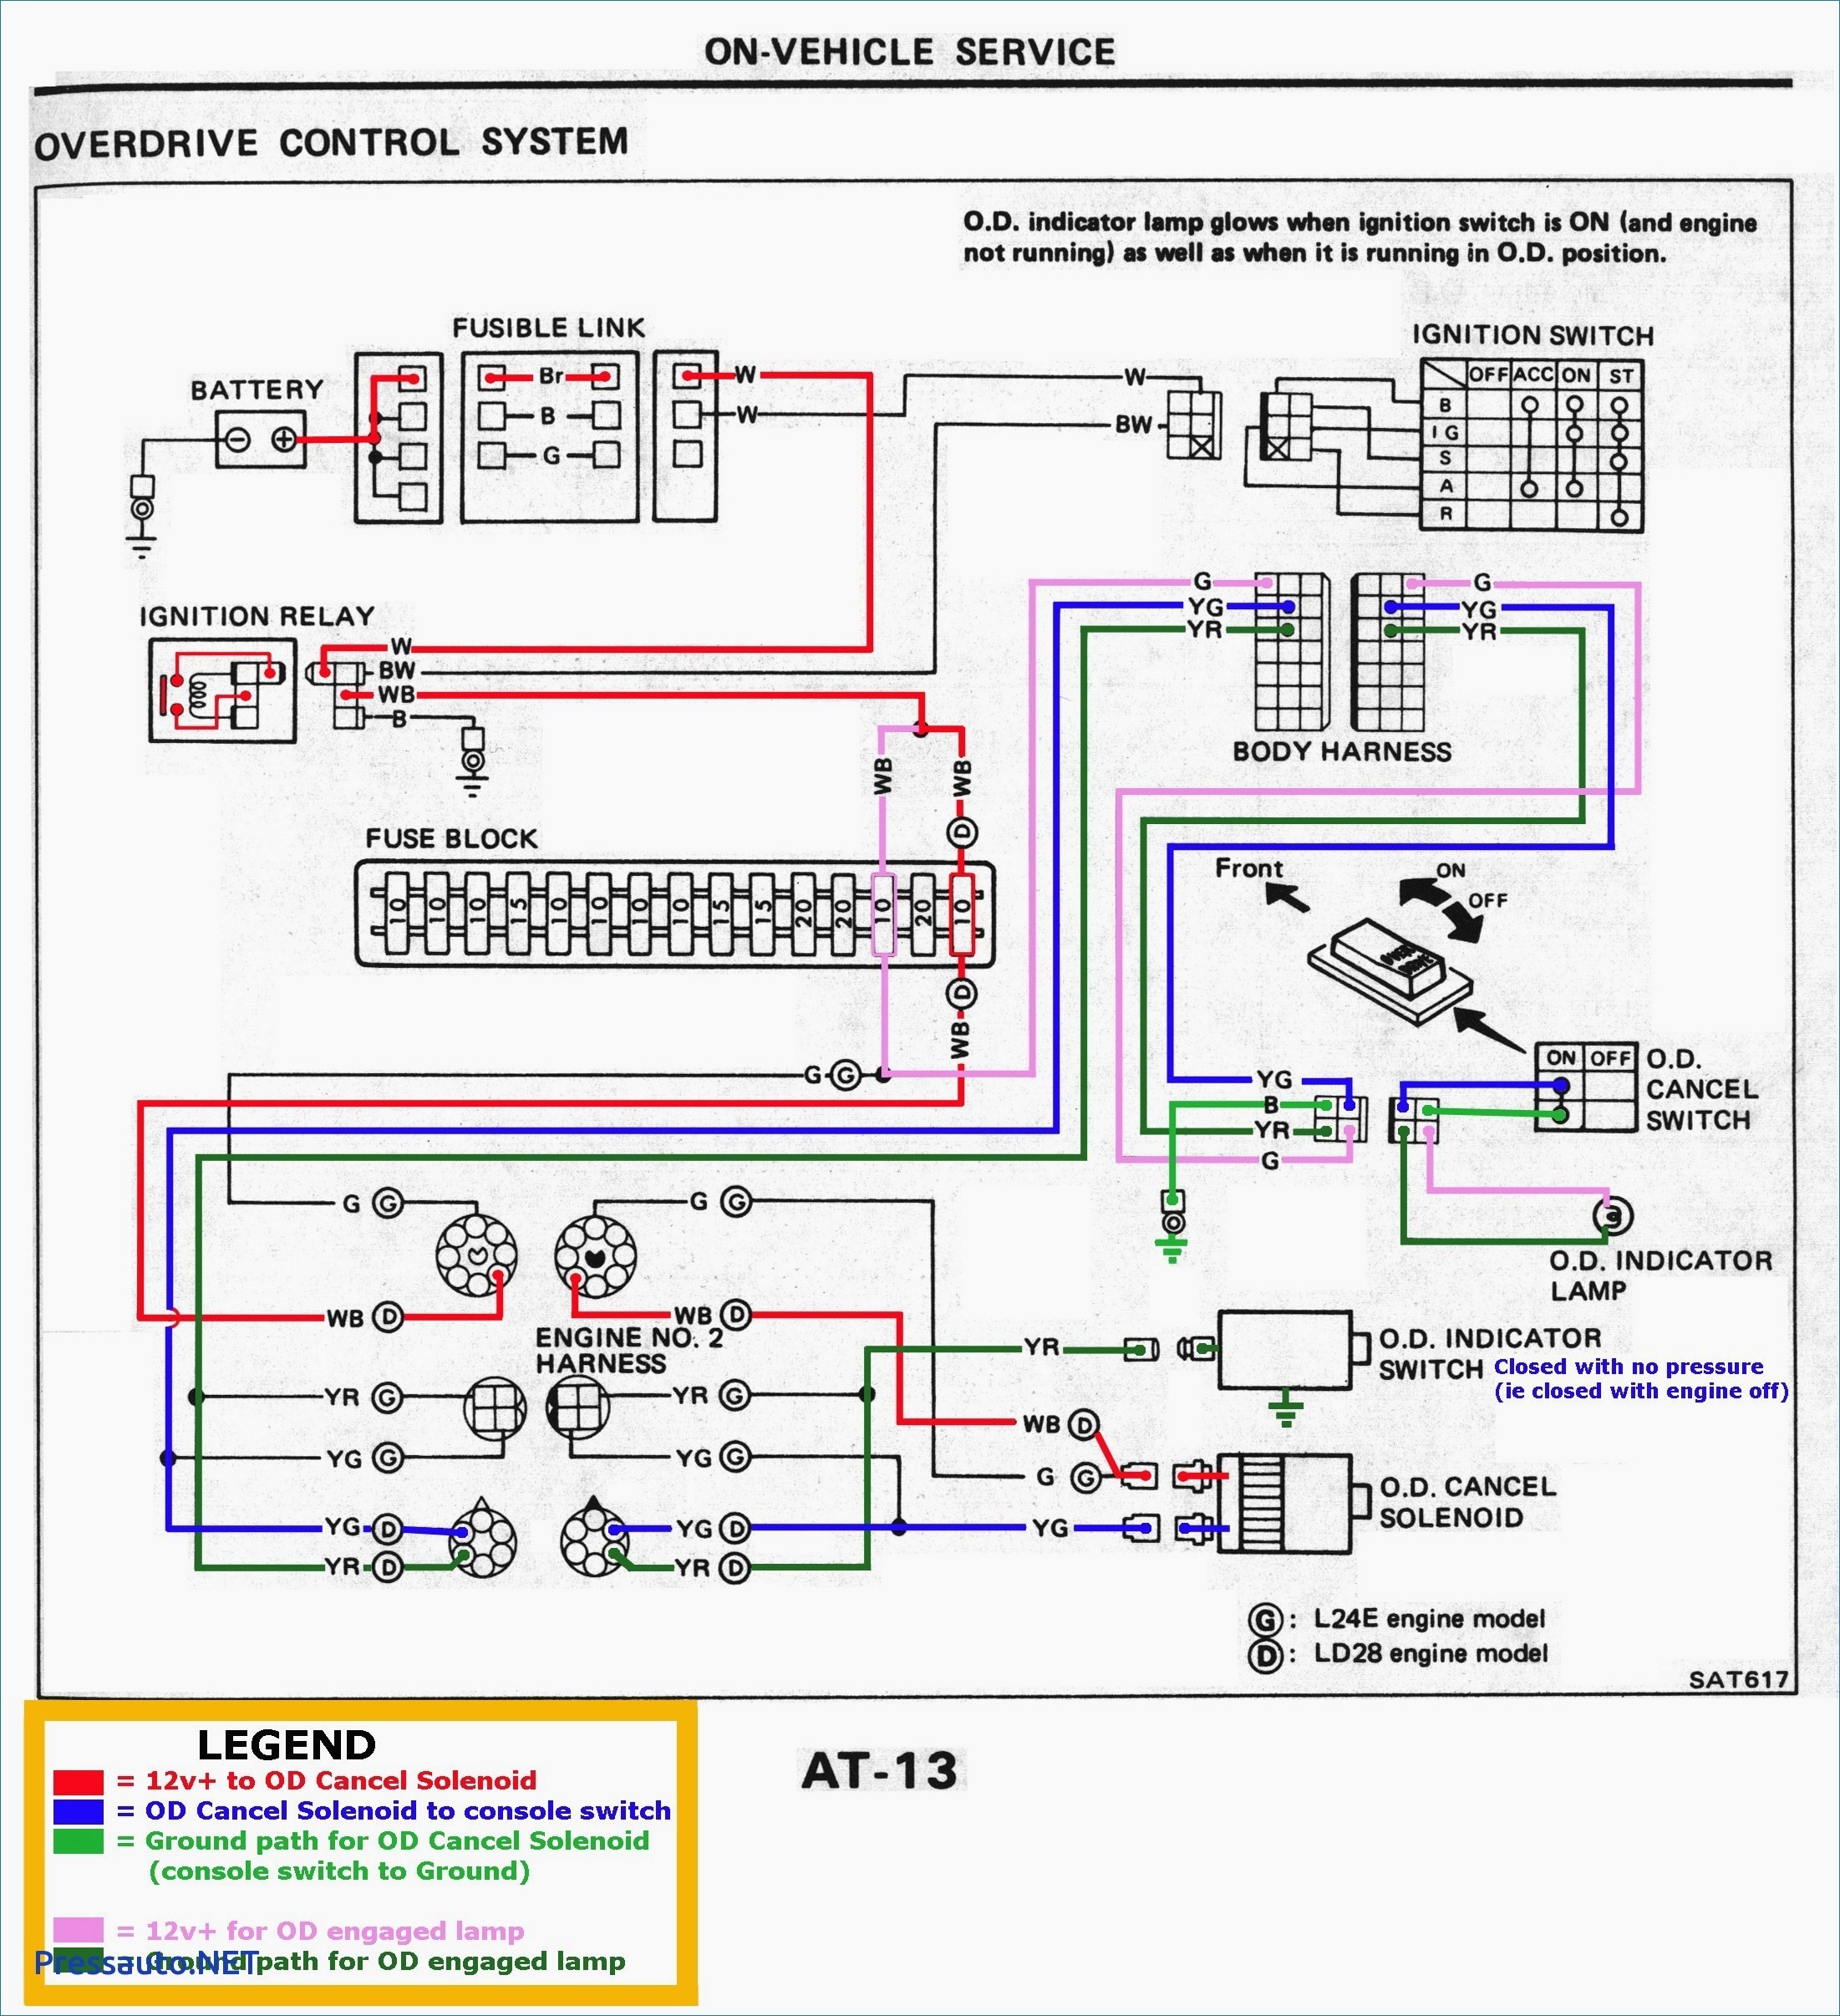 Diesel Engine Starter Wiring Diagram Best How to Wire A Starter Switch Diagram Diagram